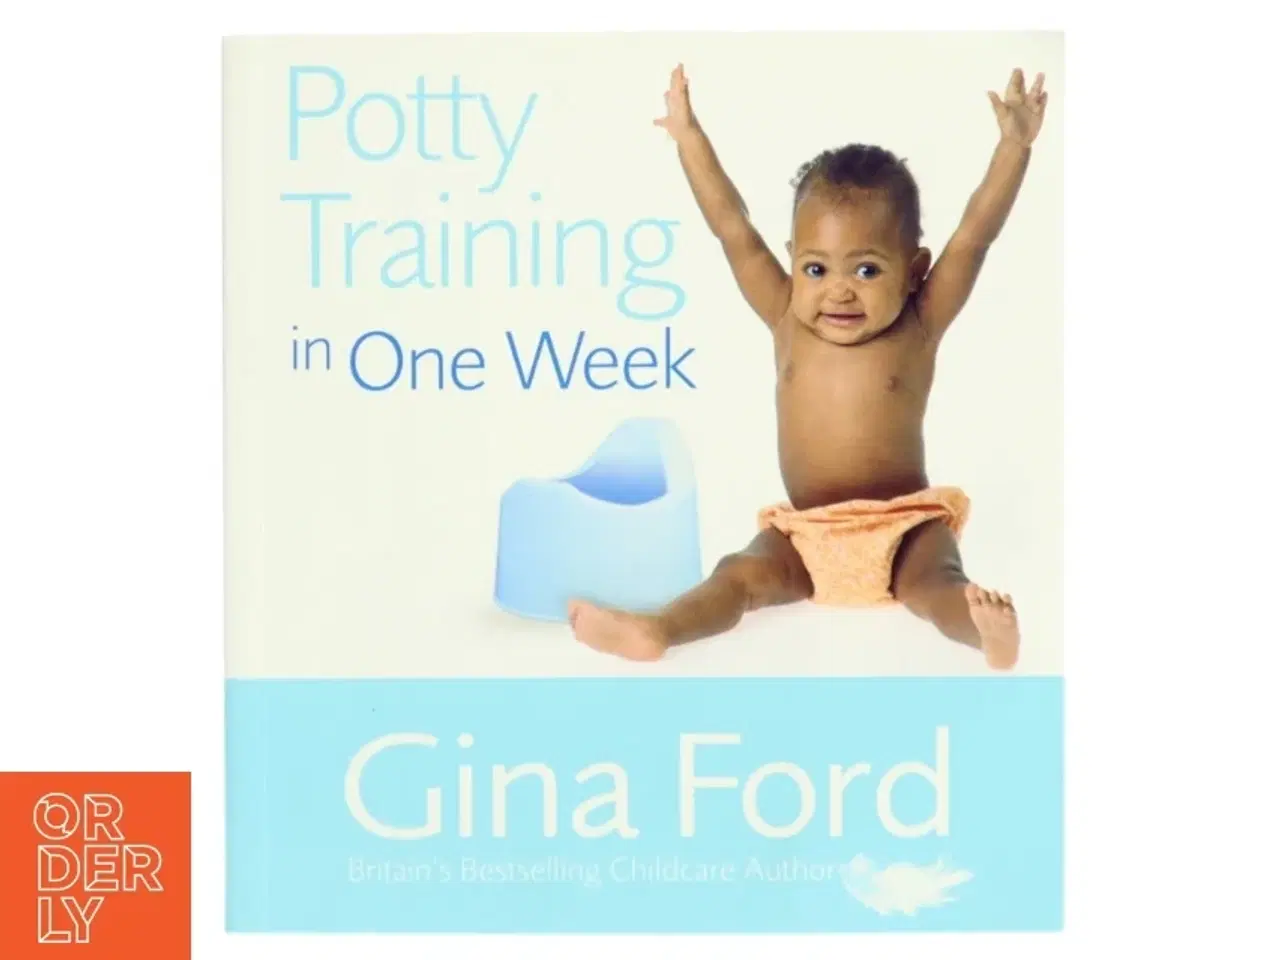 Billede 1 - 'Potty Training in One Week' af Gina Ford (bog)